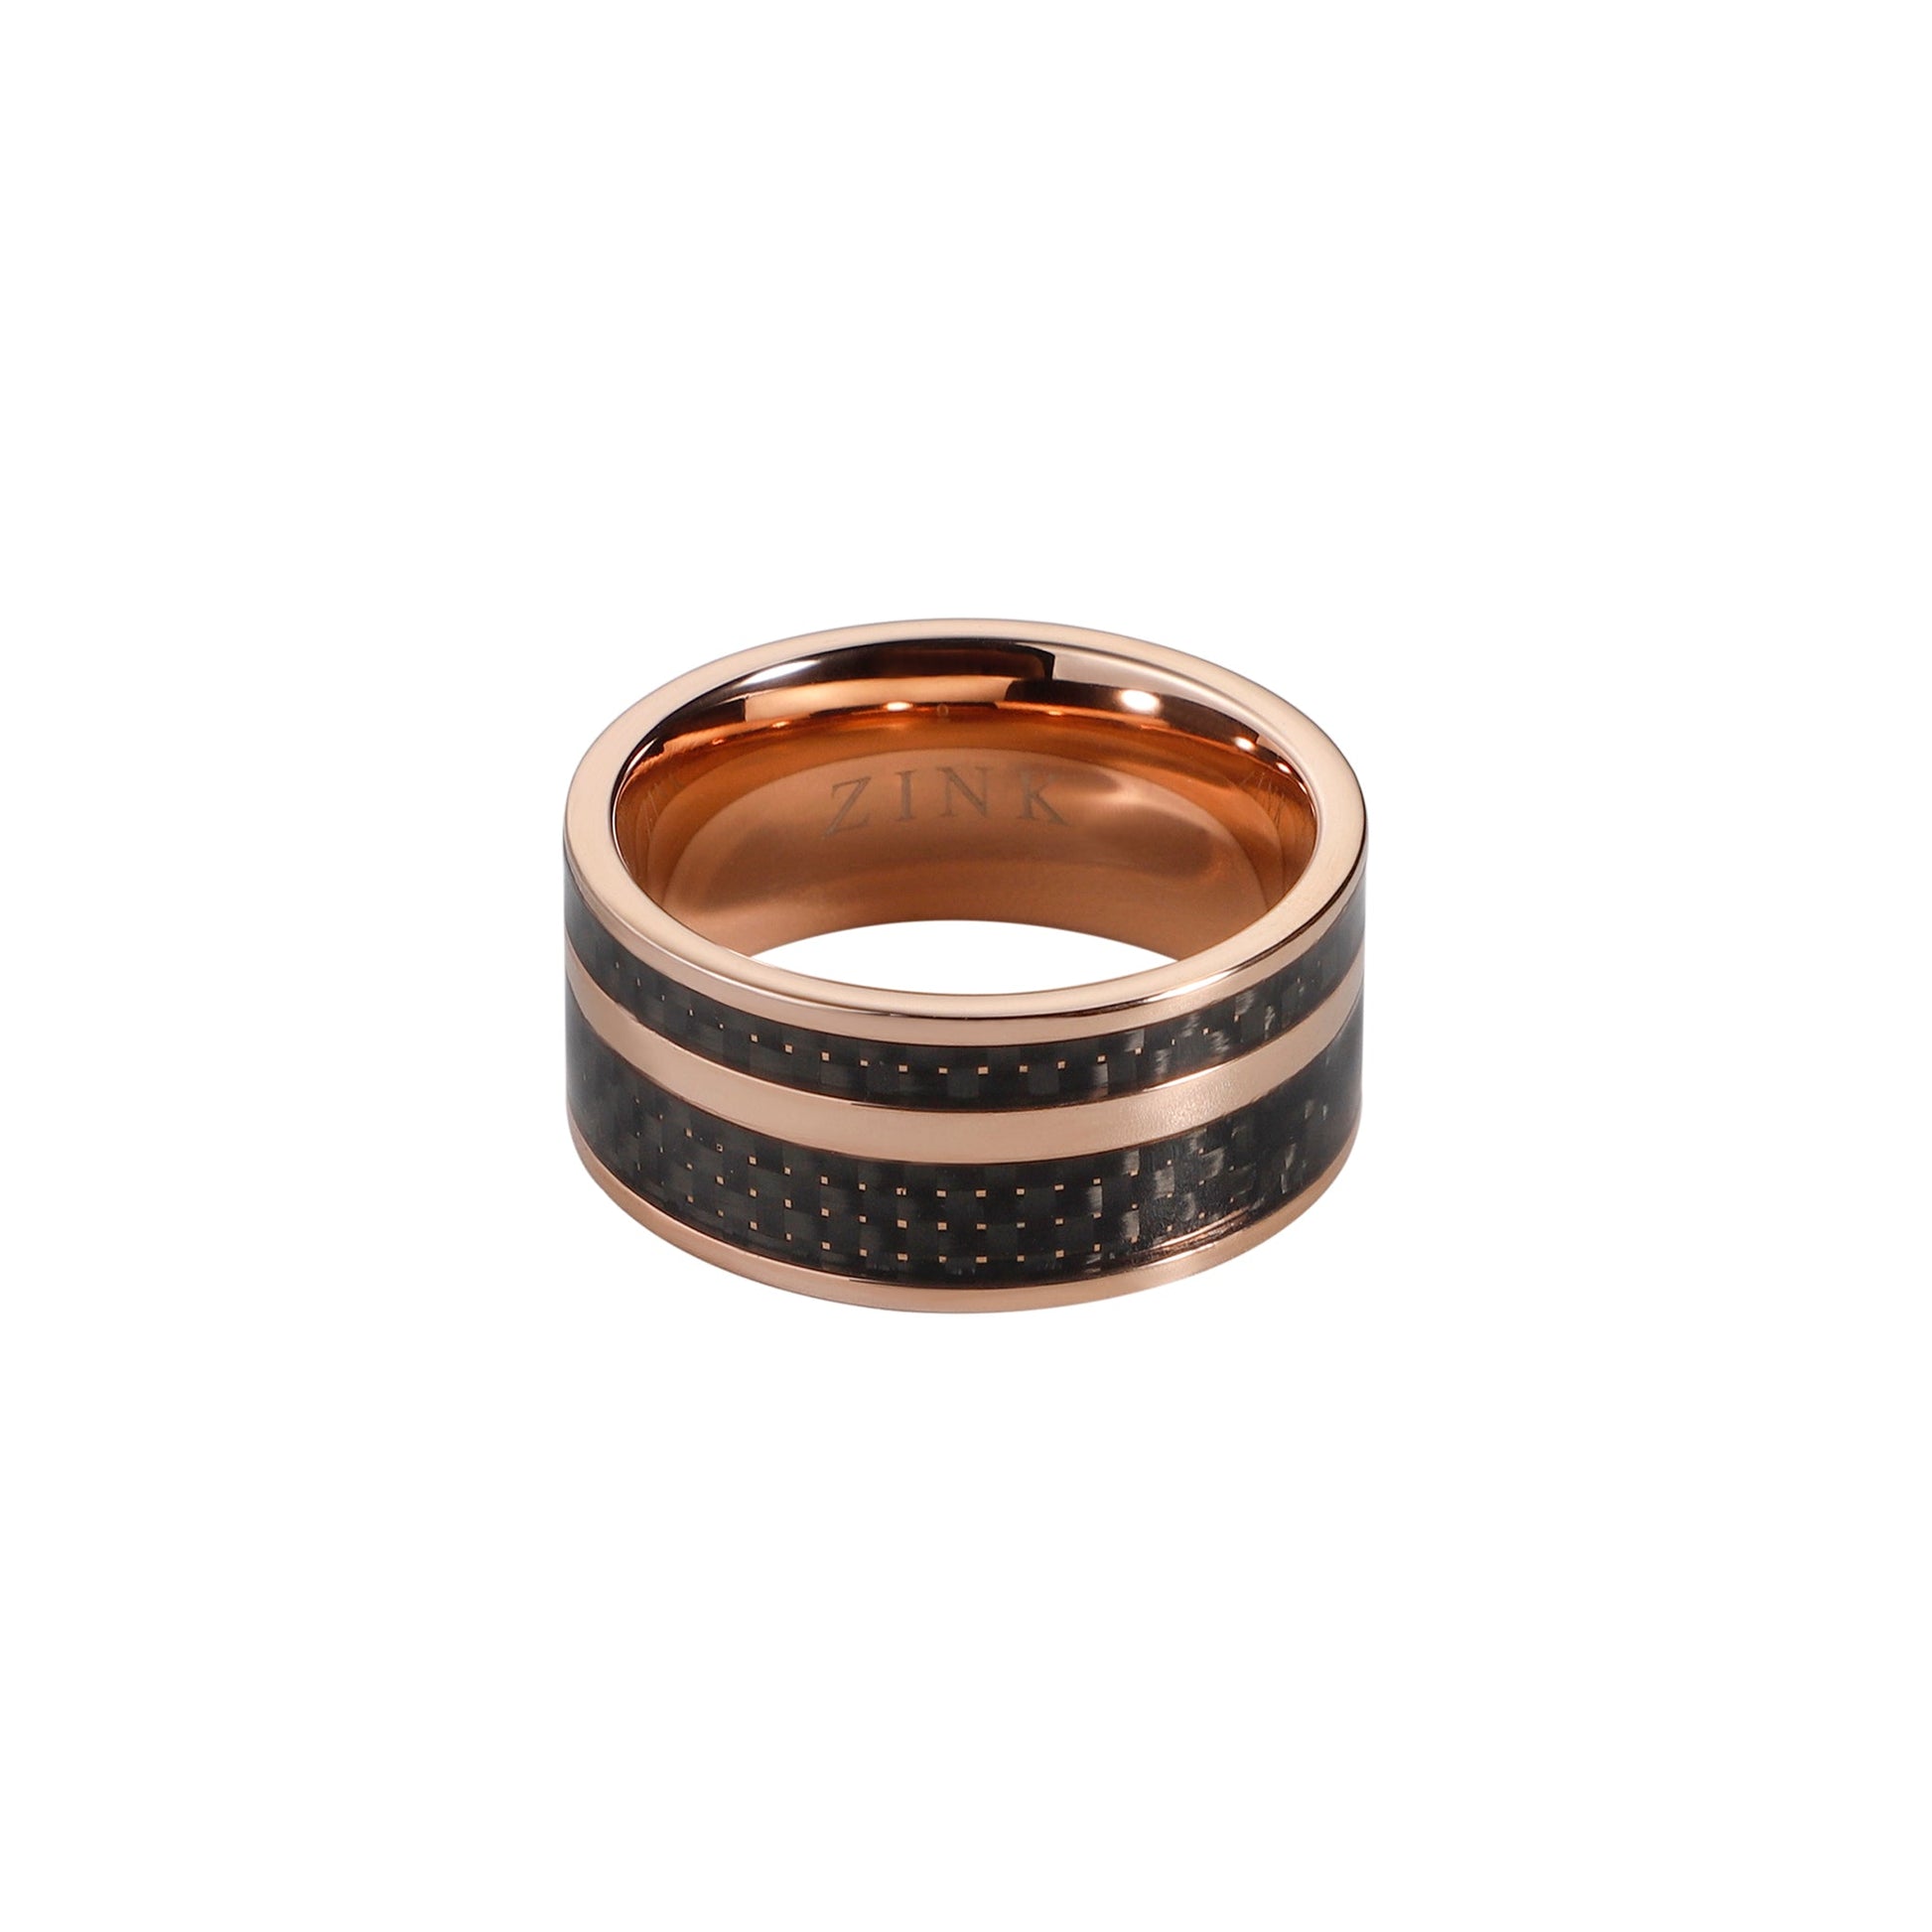 ZJRG016SB ZINK Men's Ring